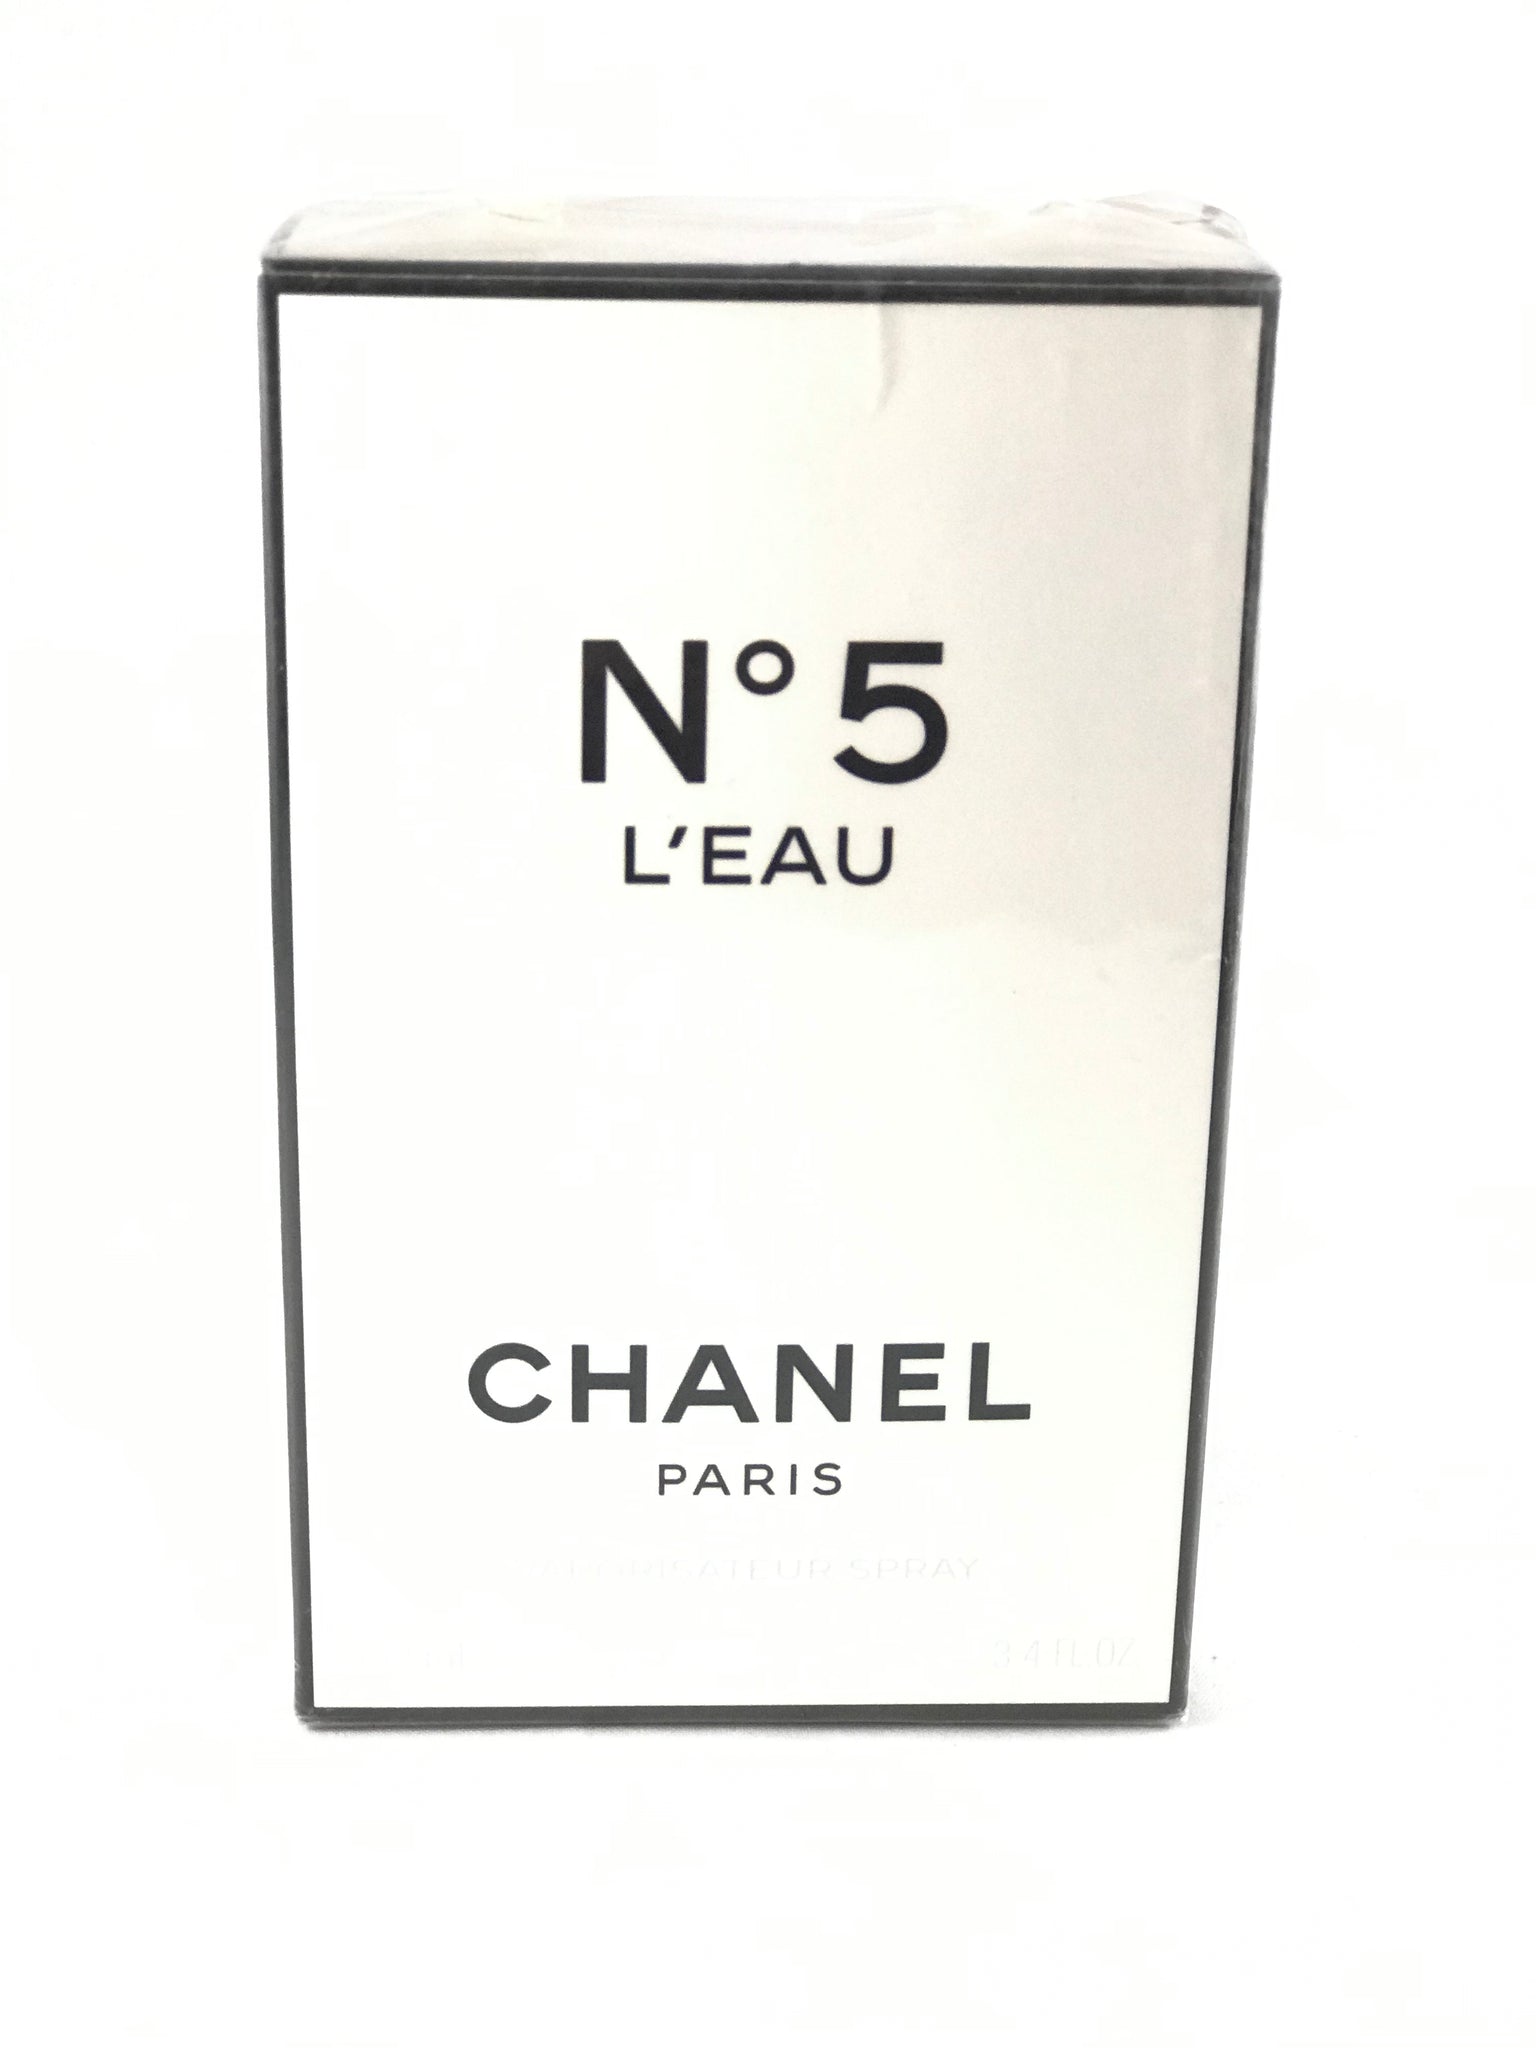 Nº5 L'EAU Chanel Paris Eau de Toilette Spray 3.4oz – always special  perfumes & gifts